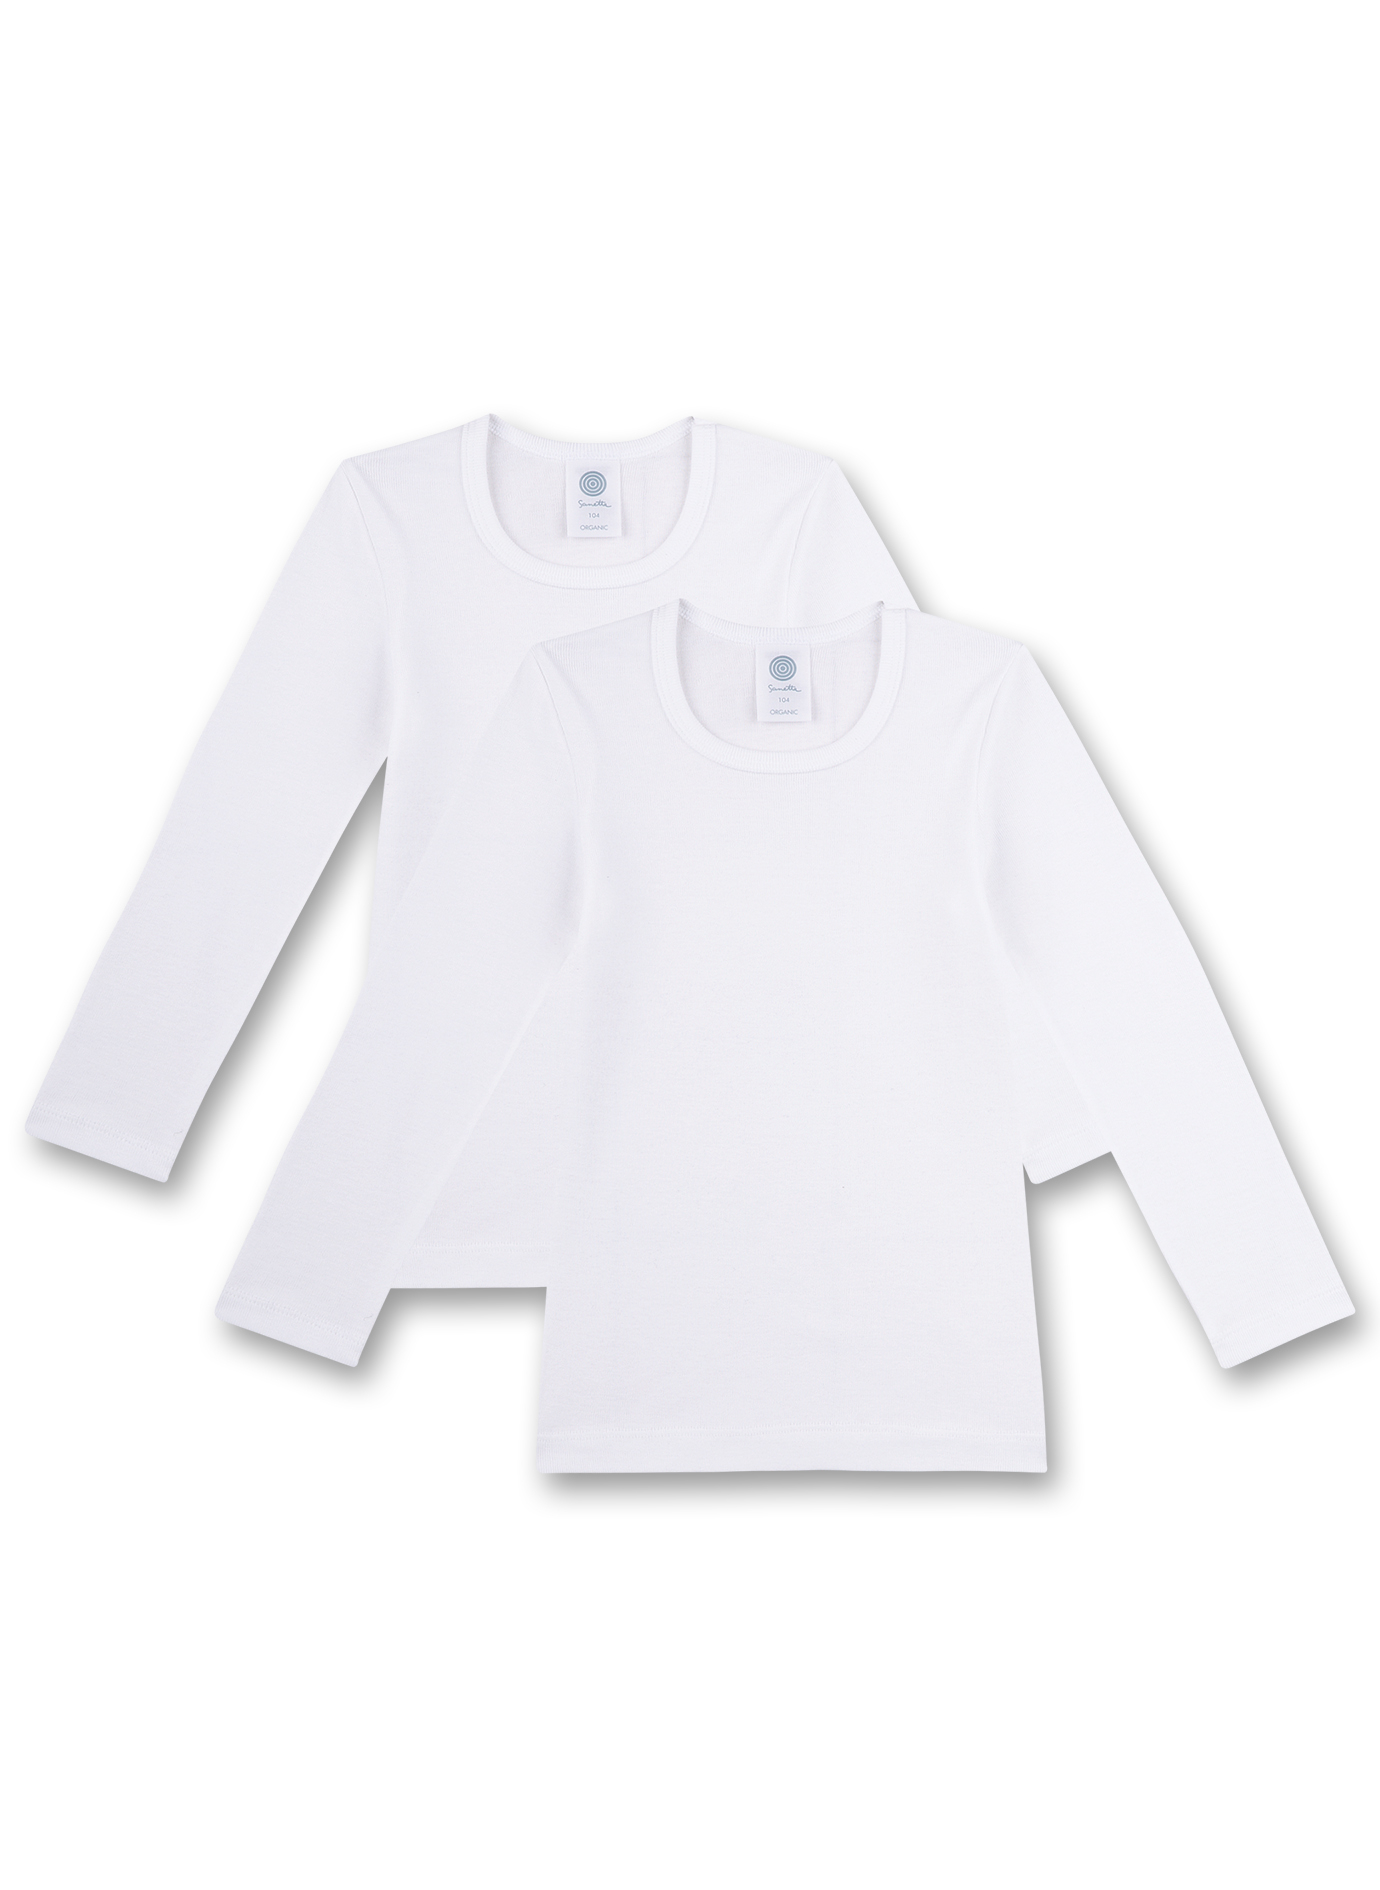 Mädchen-Unterhemd langarm (Doppelpack) Weiß